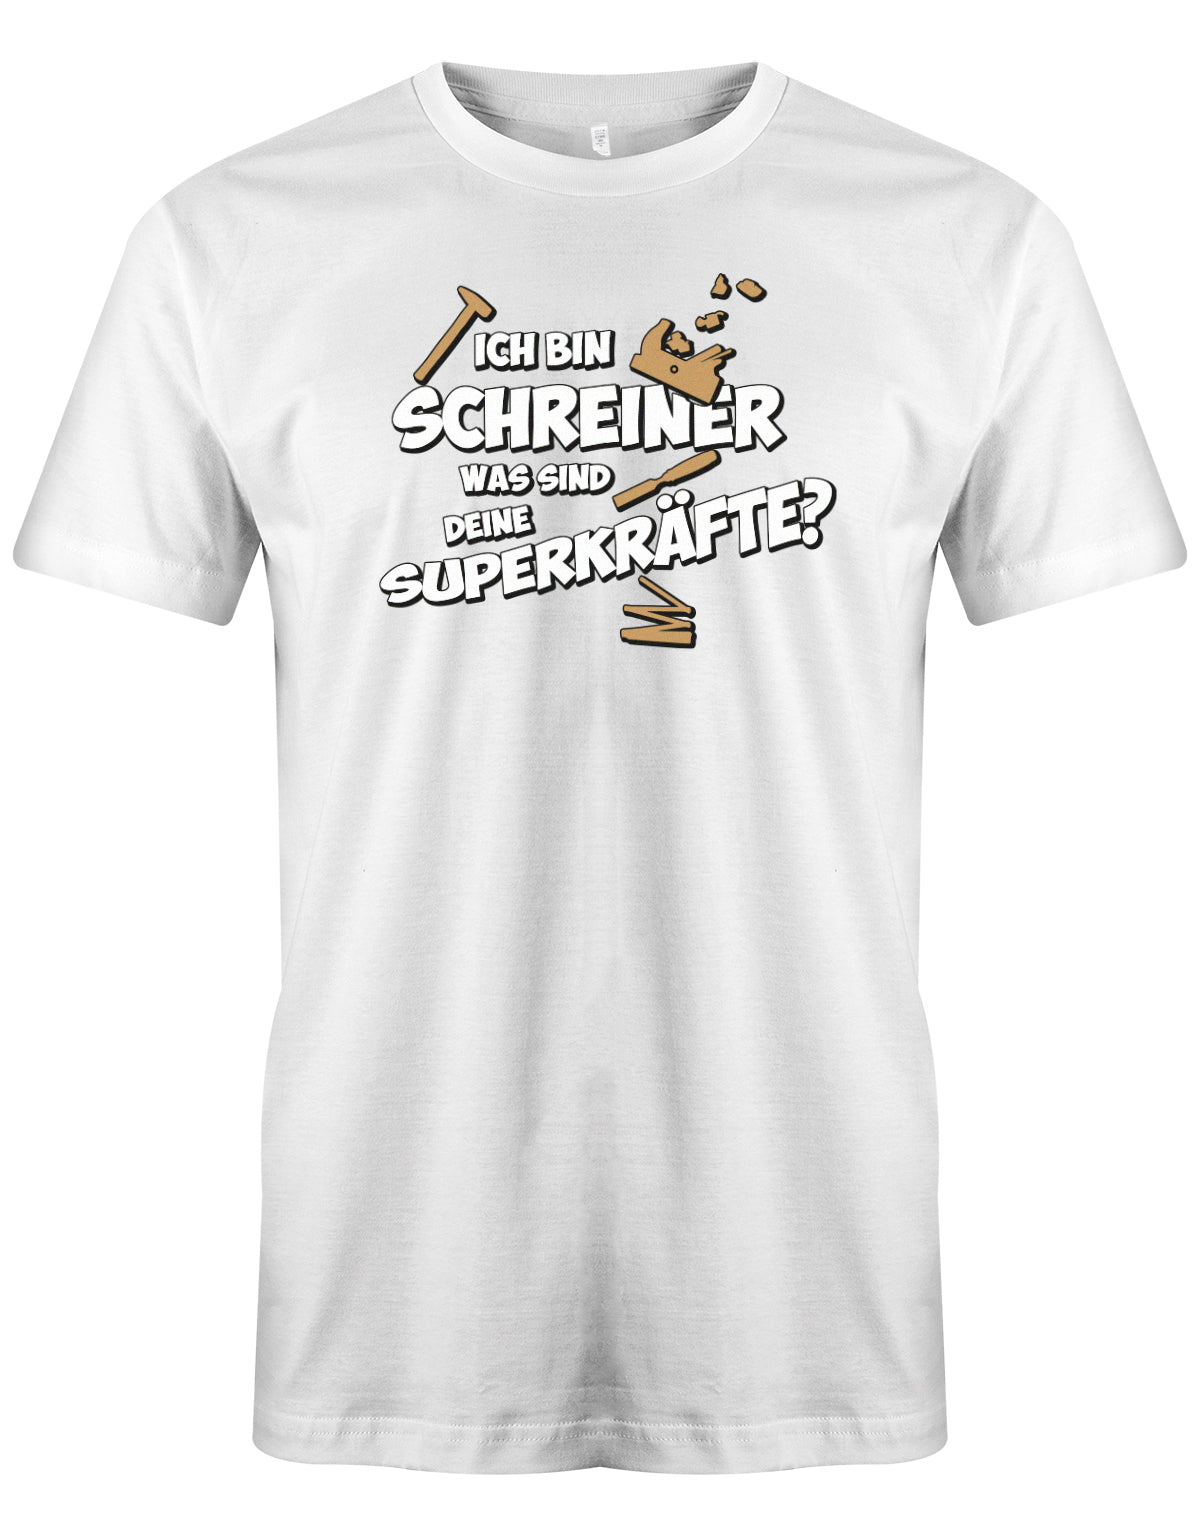 Schreiner und Tischler Shirt. Männer Shirt bedruckt mit: Ich bin Schreiner was sind deine Superkräfte? Weiss